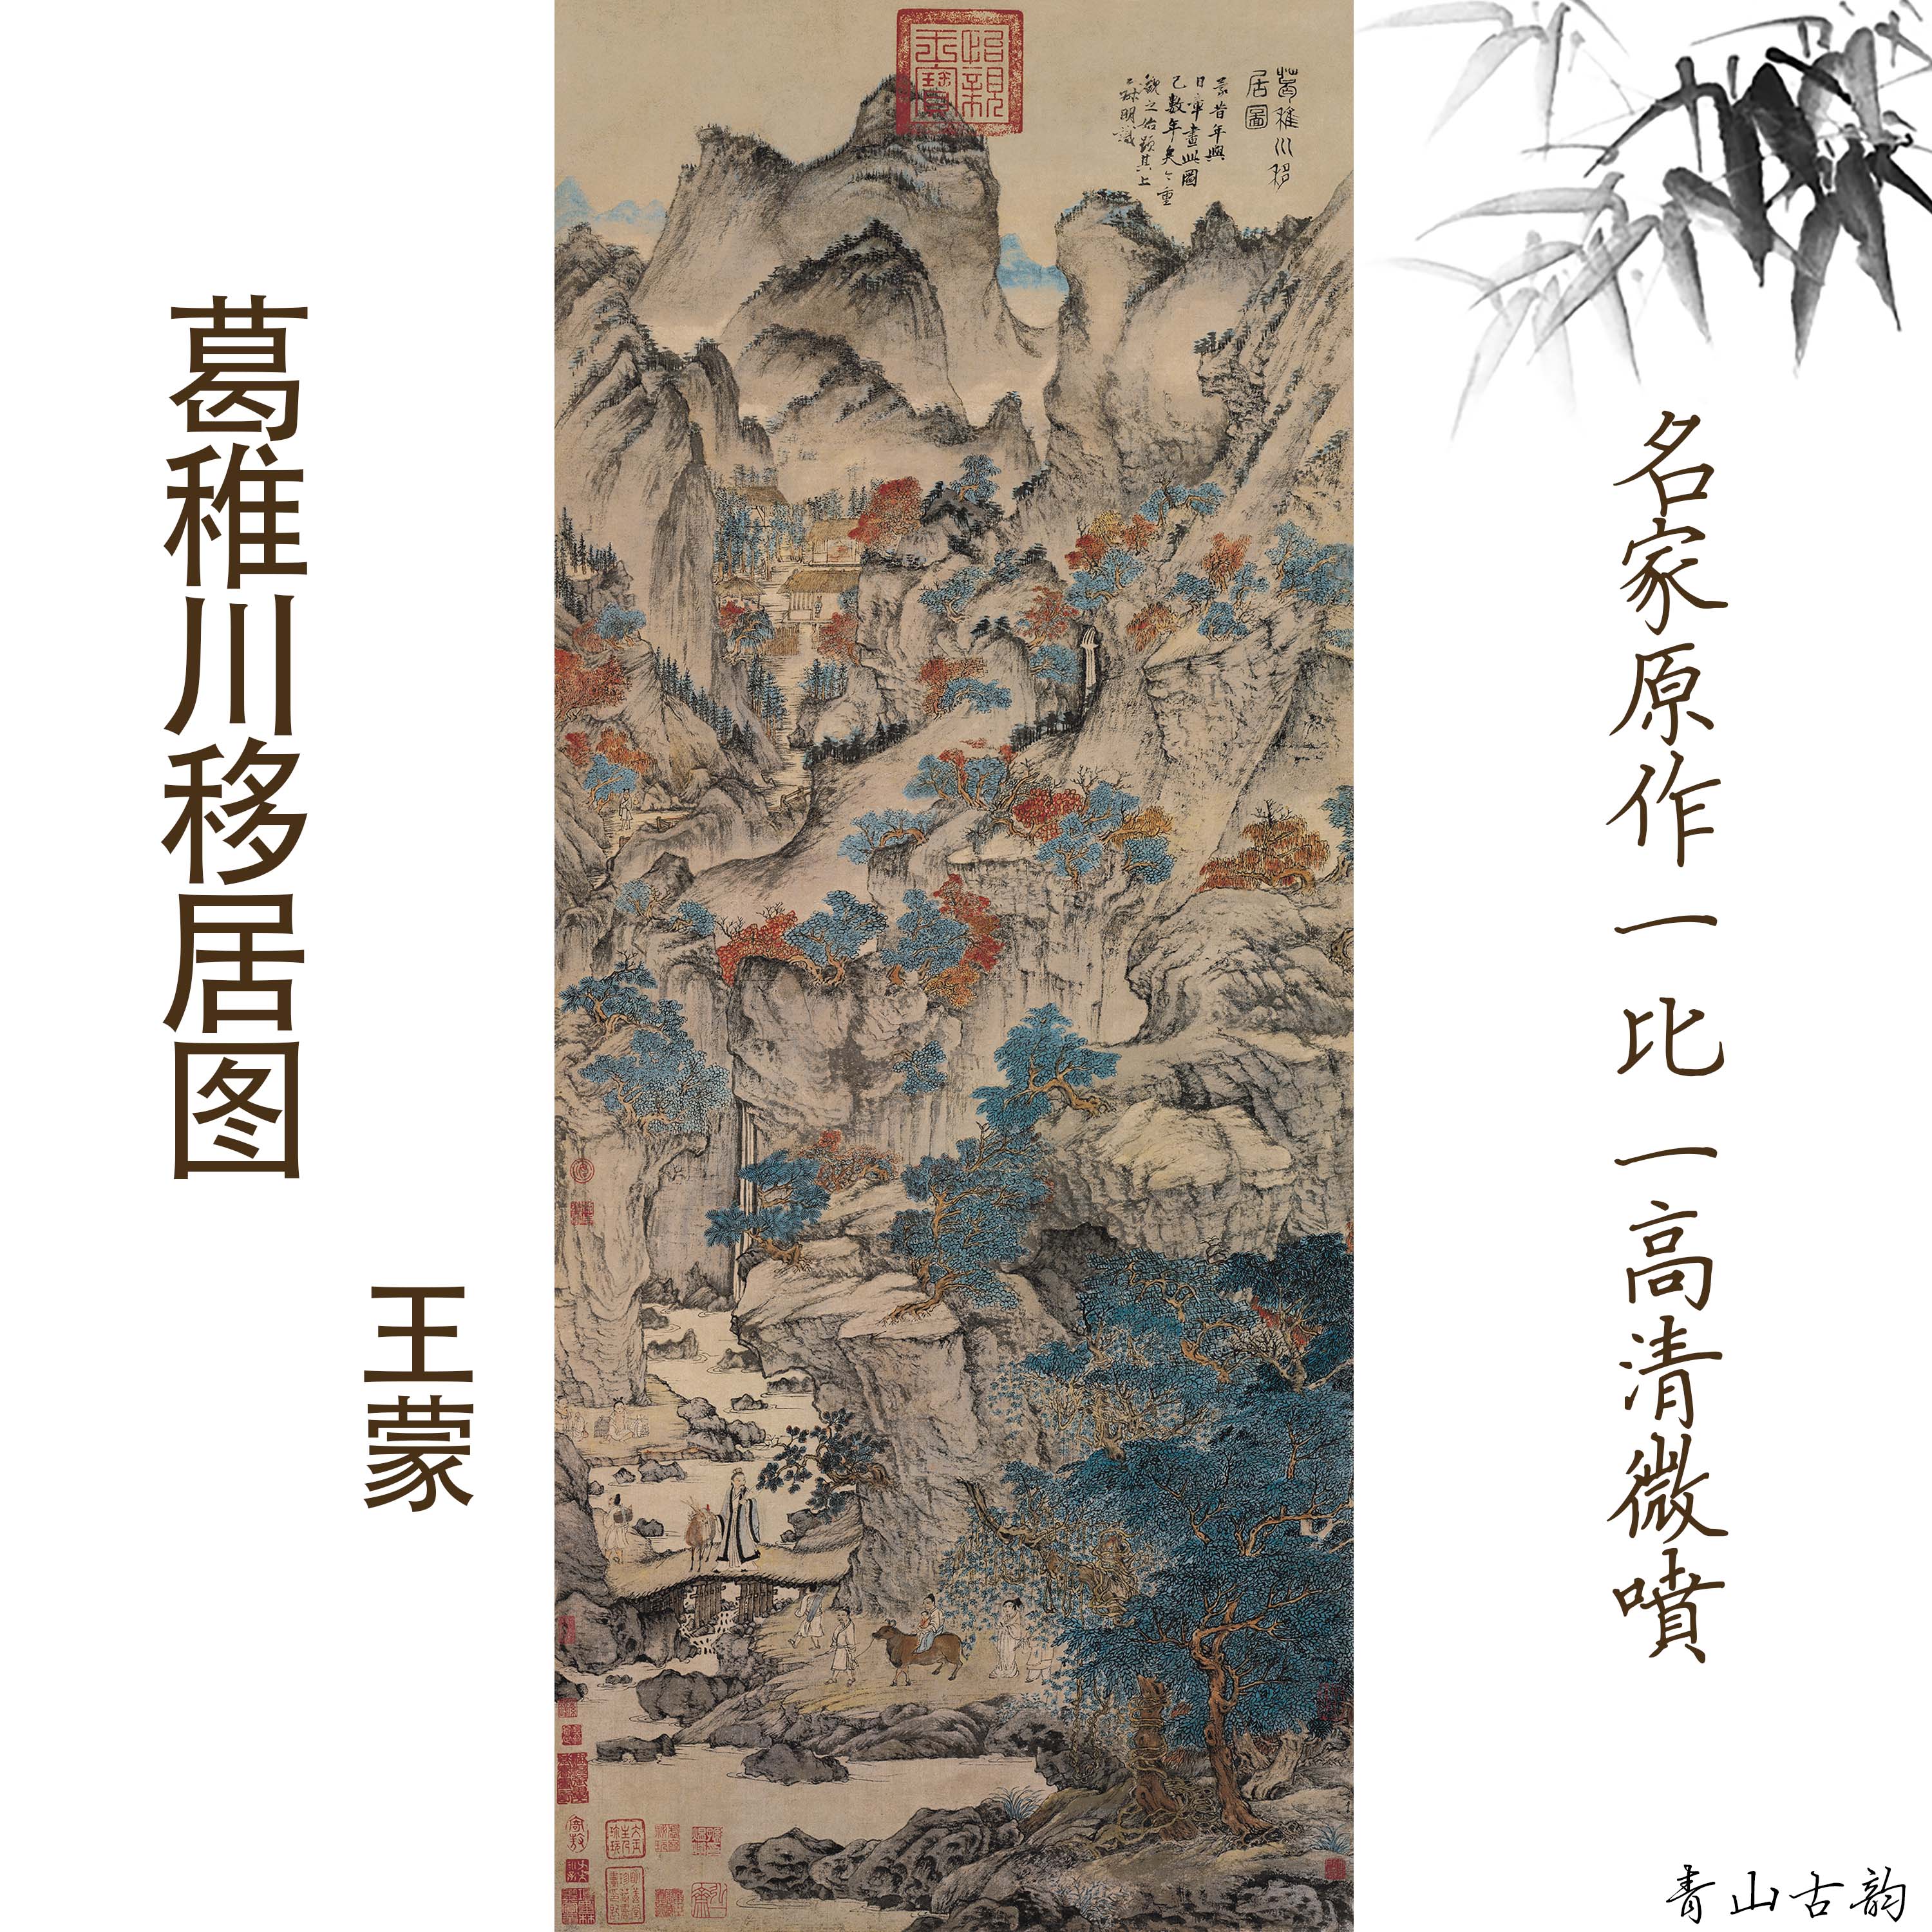 Chinese Antique Art Painting 元 王蒙 葛稚川移居图 Yuan Wang Meng Ge Zhi Chuan Yi Ju Tu